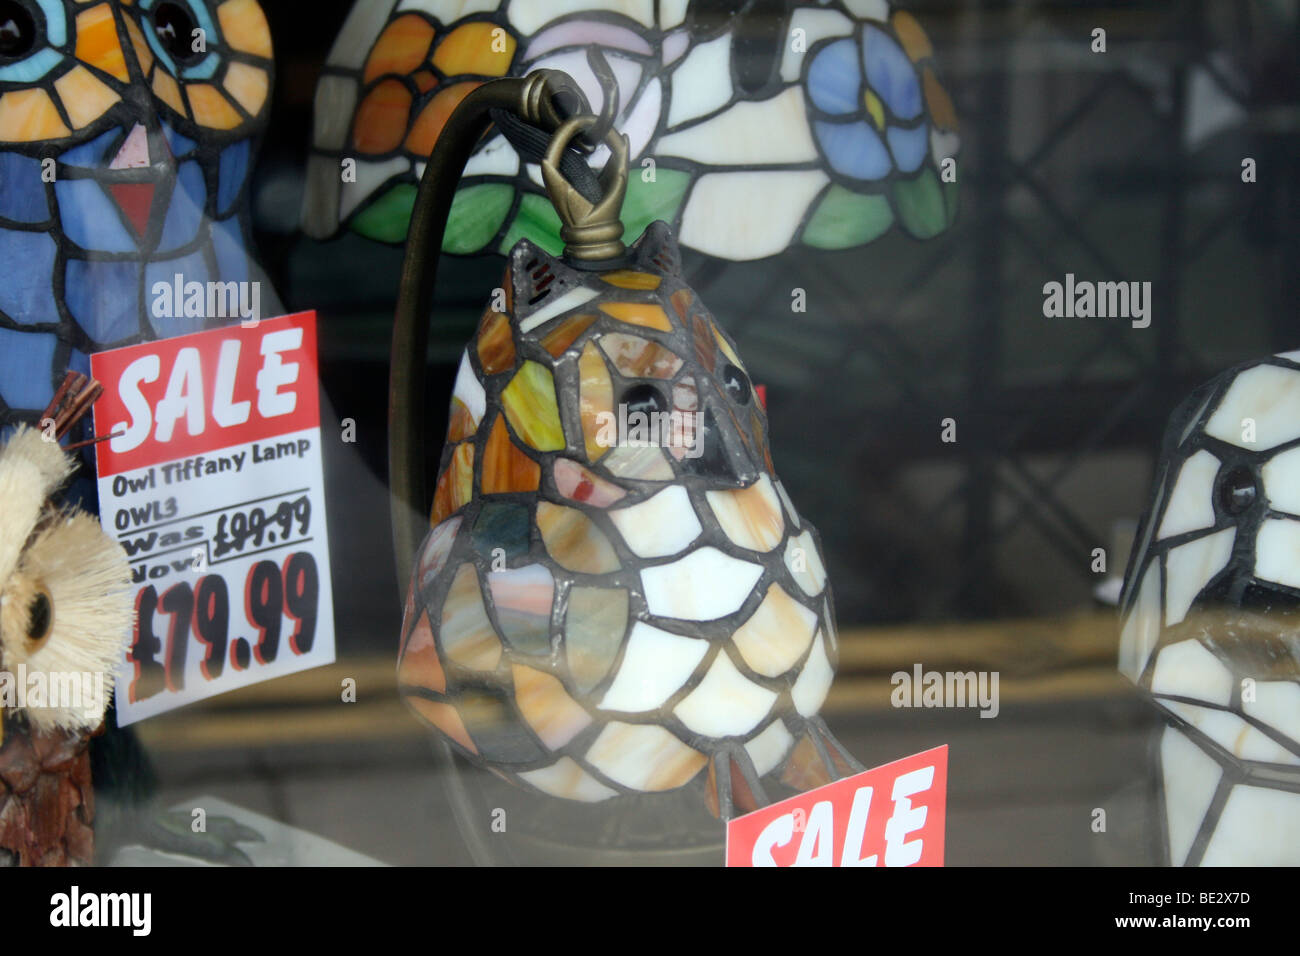 Owl lámpara Tiffany en escaparate Foto de stock